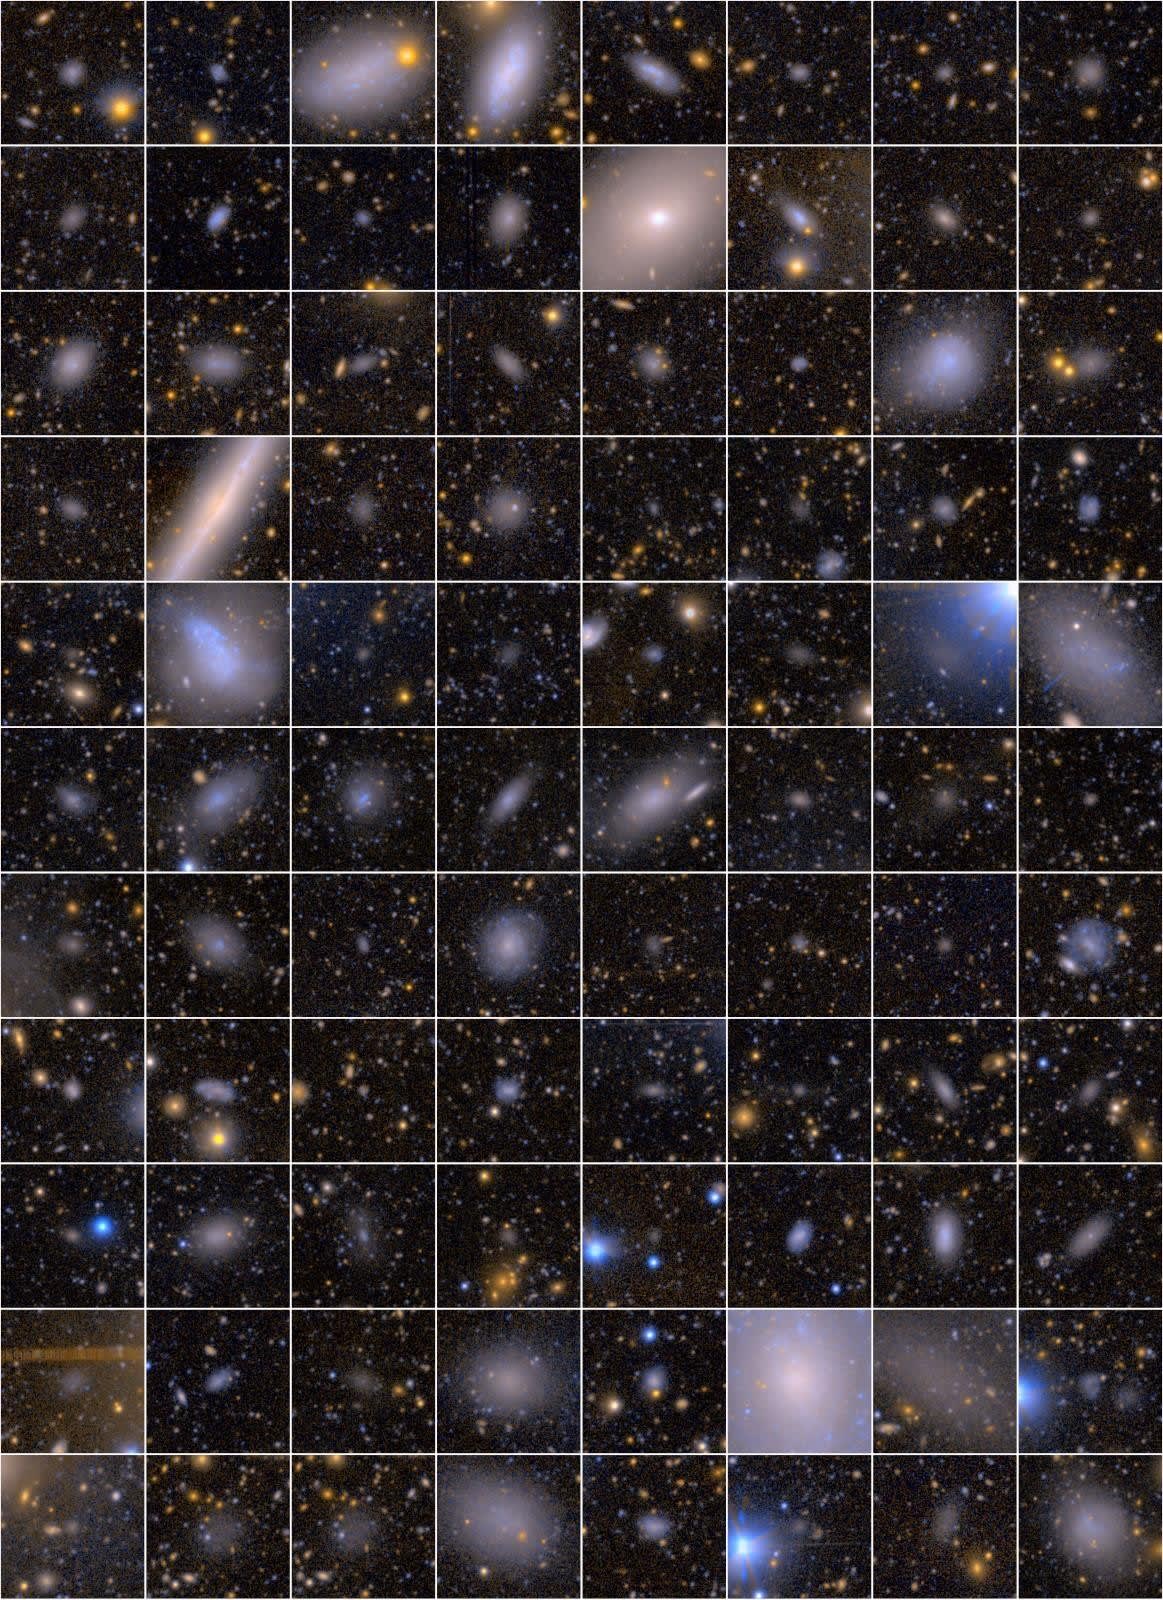 検出された衛星銀河の一部。多くの衛星銀河は淡く広がっている。（Credit: 国立天文台）